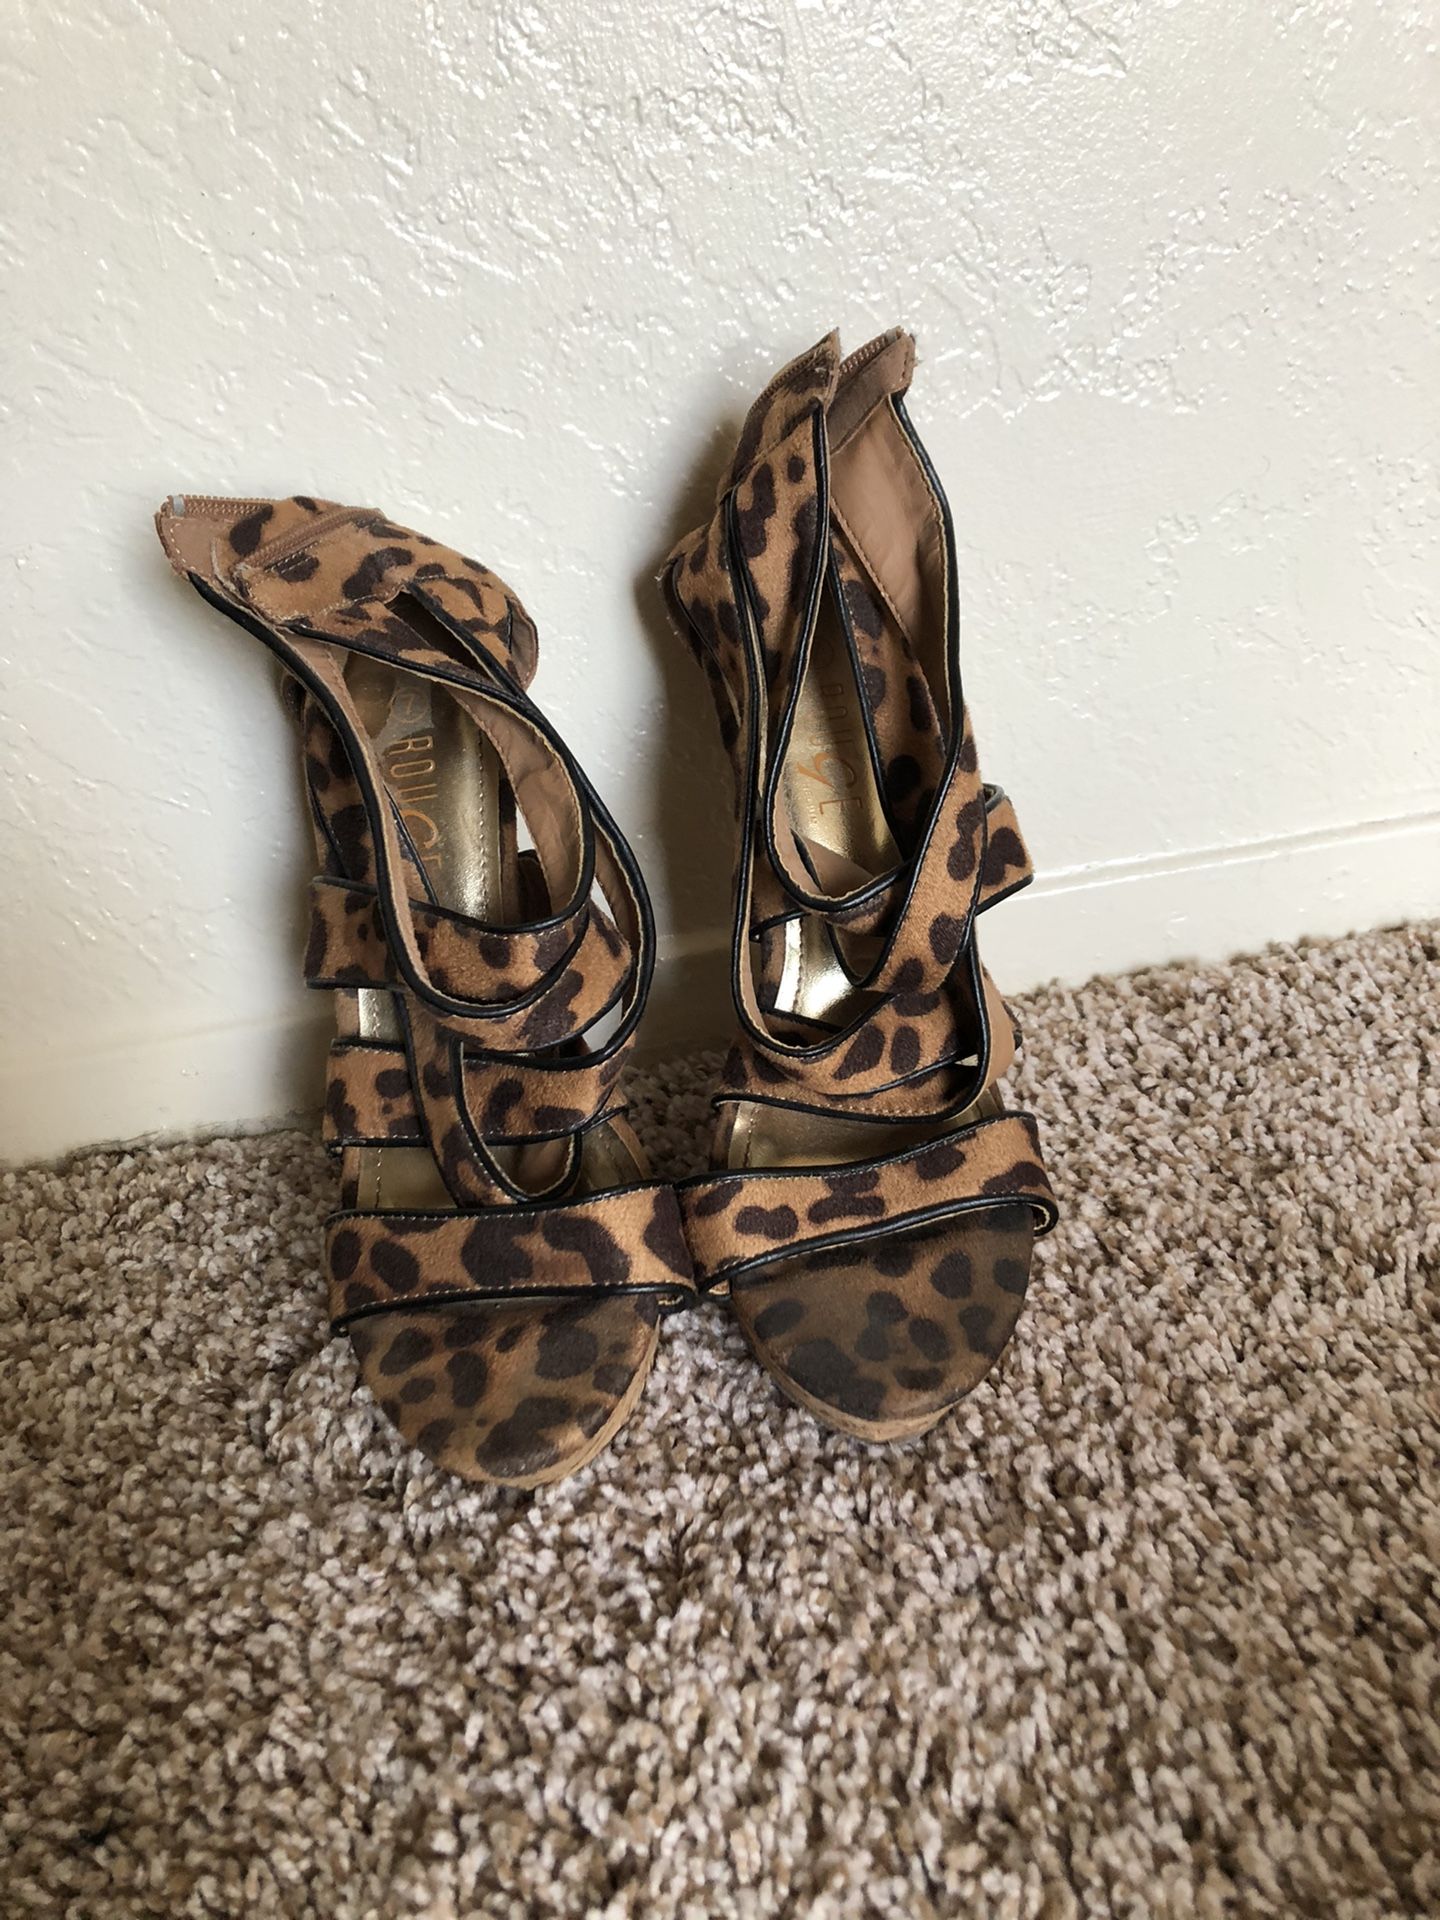 Cheetah print heels